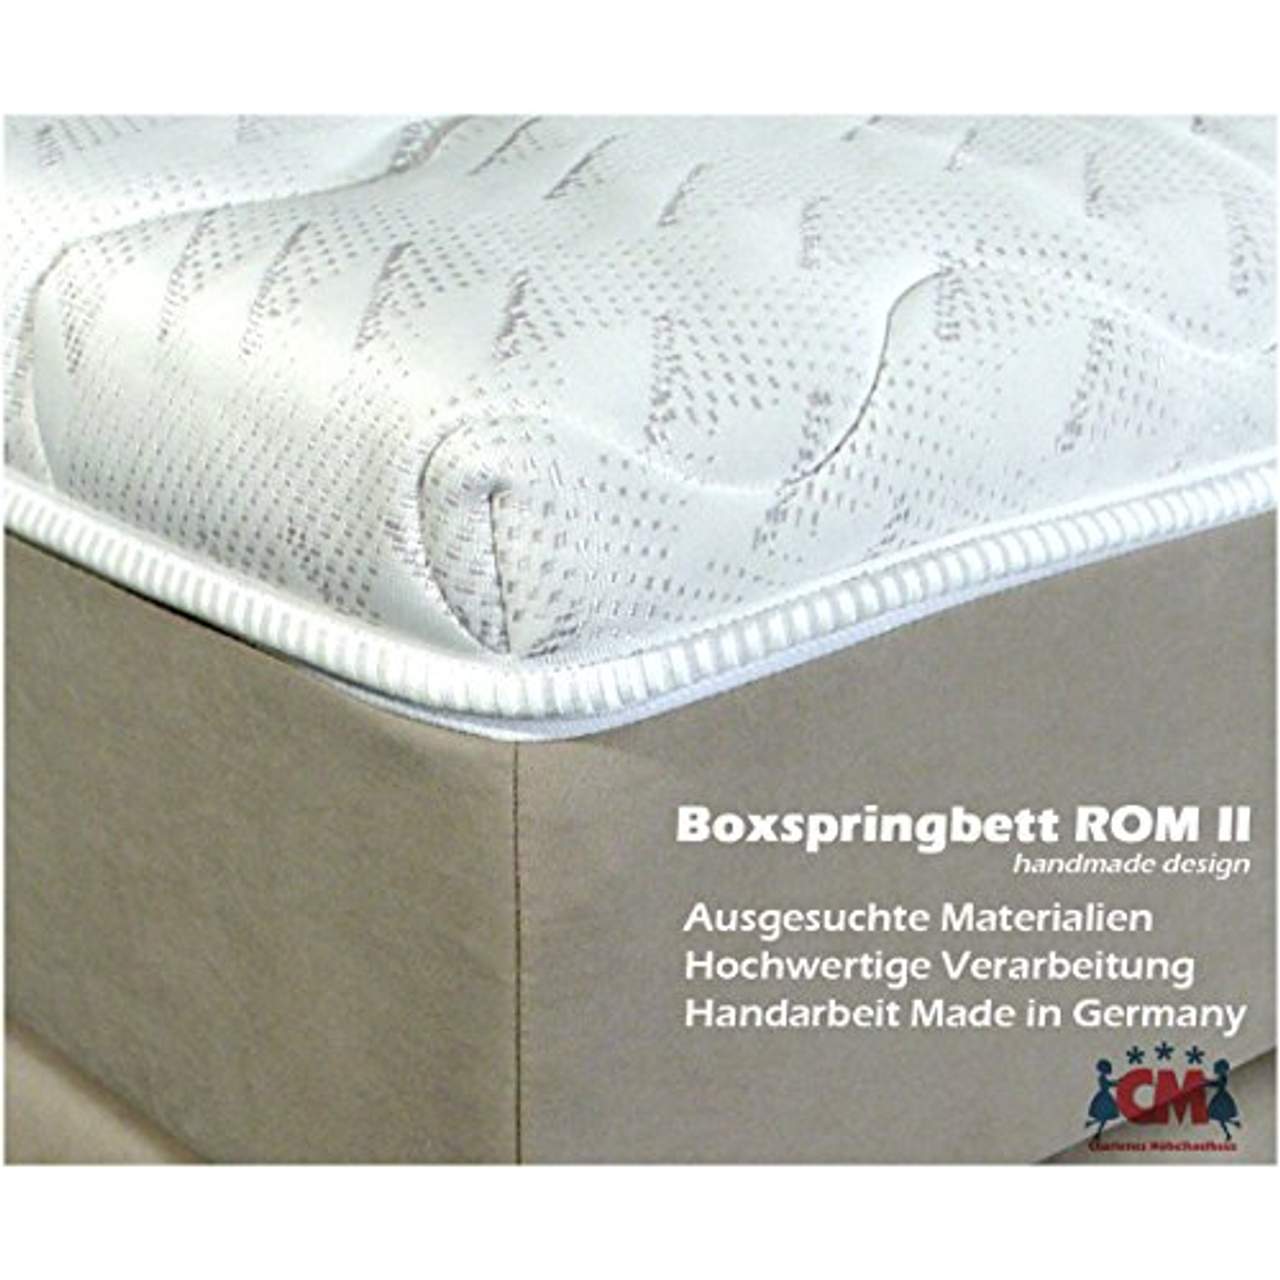 Boxspringbett ROM II 180x200 cm Beige